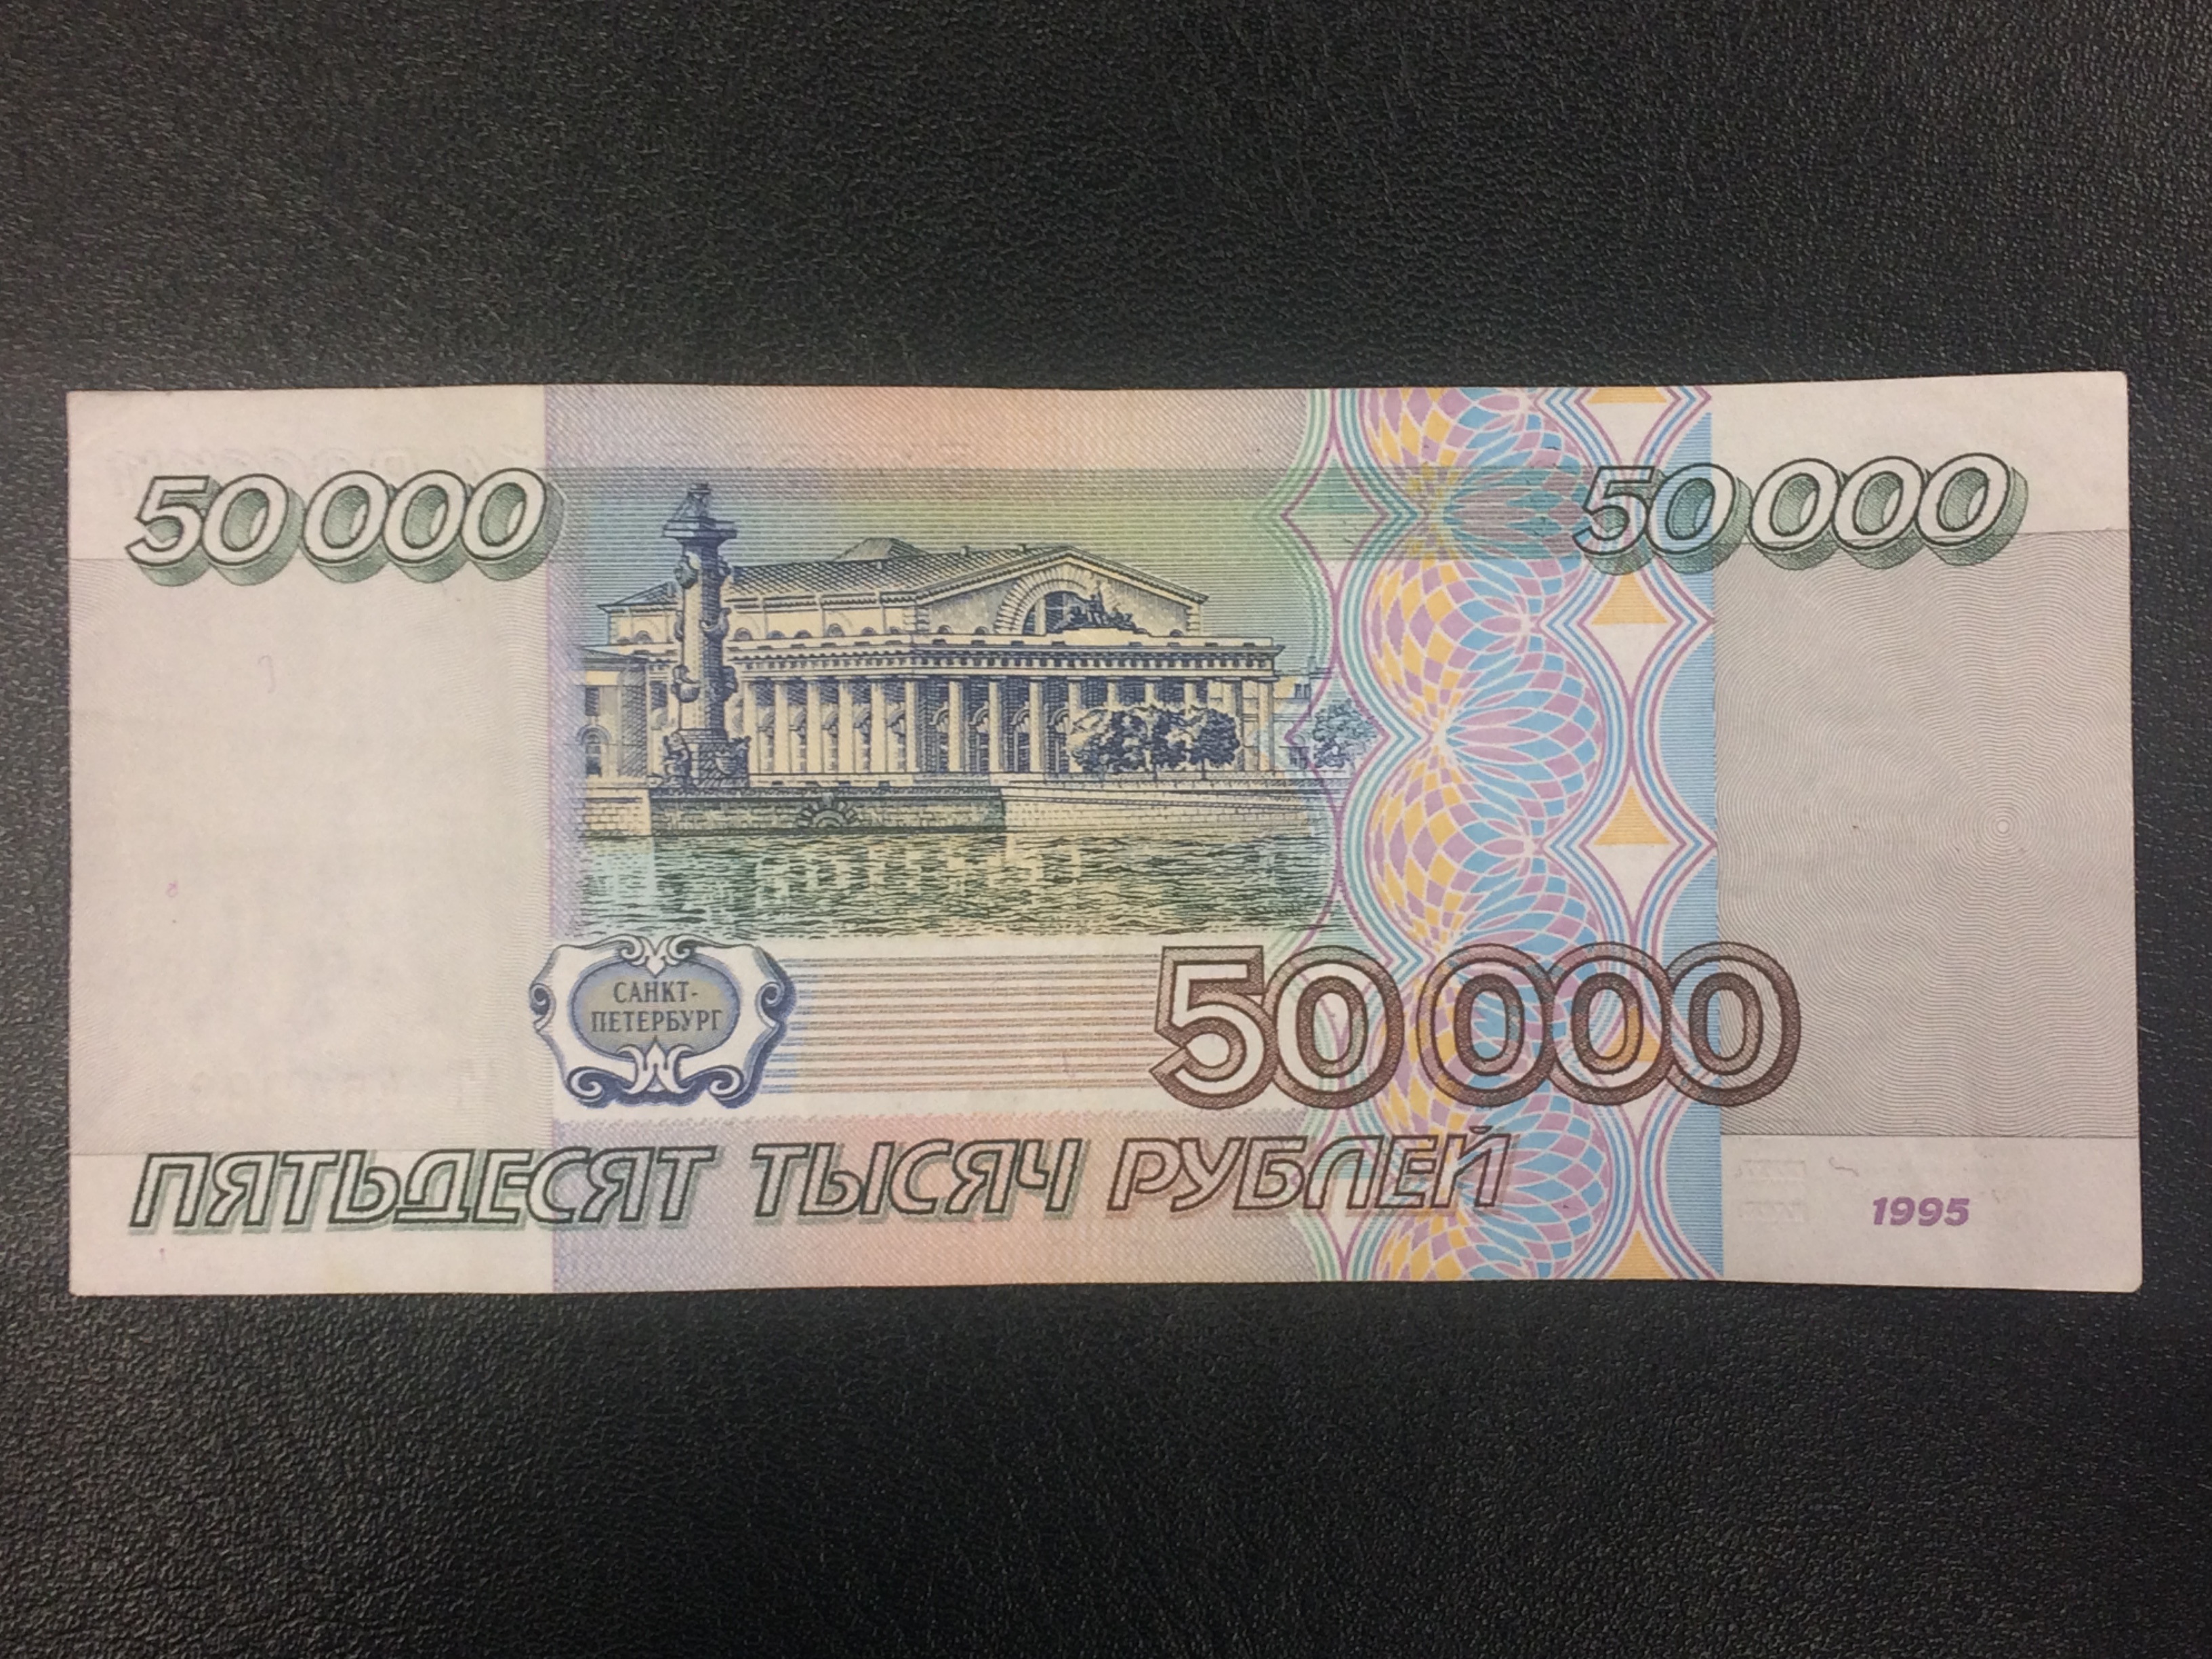 Пятьдесят р. Купюра 5000 1995. Купюра 50 тысяч рублей 1995. 50 000 Рублей купюра 1995 года. Купюра 10000 рублей 1995 года.